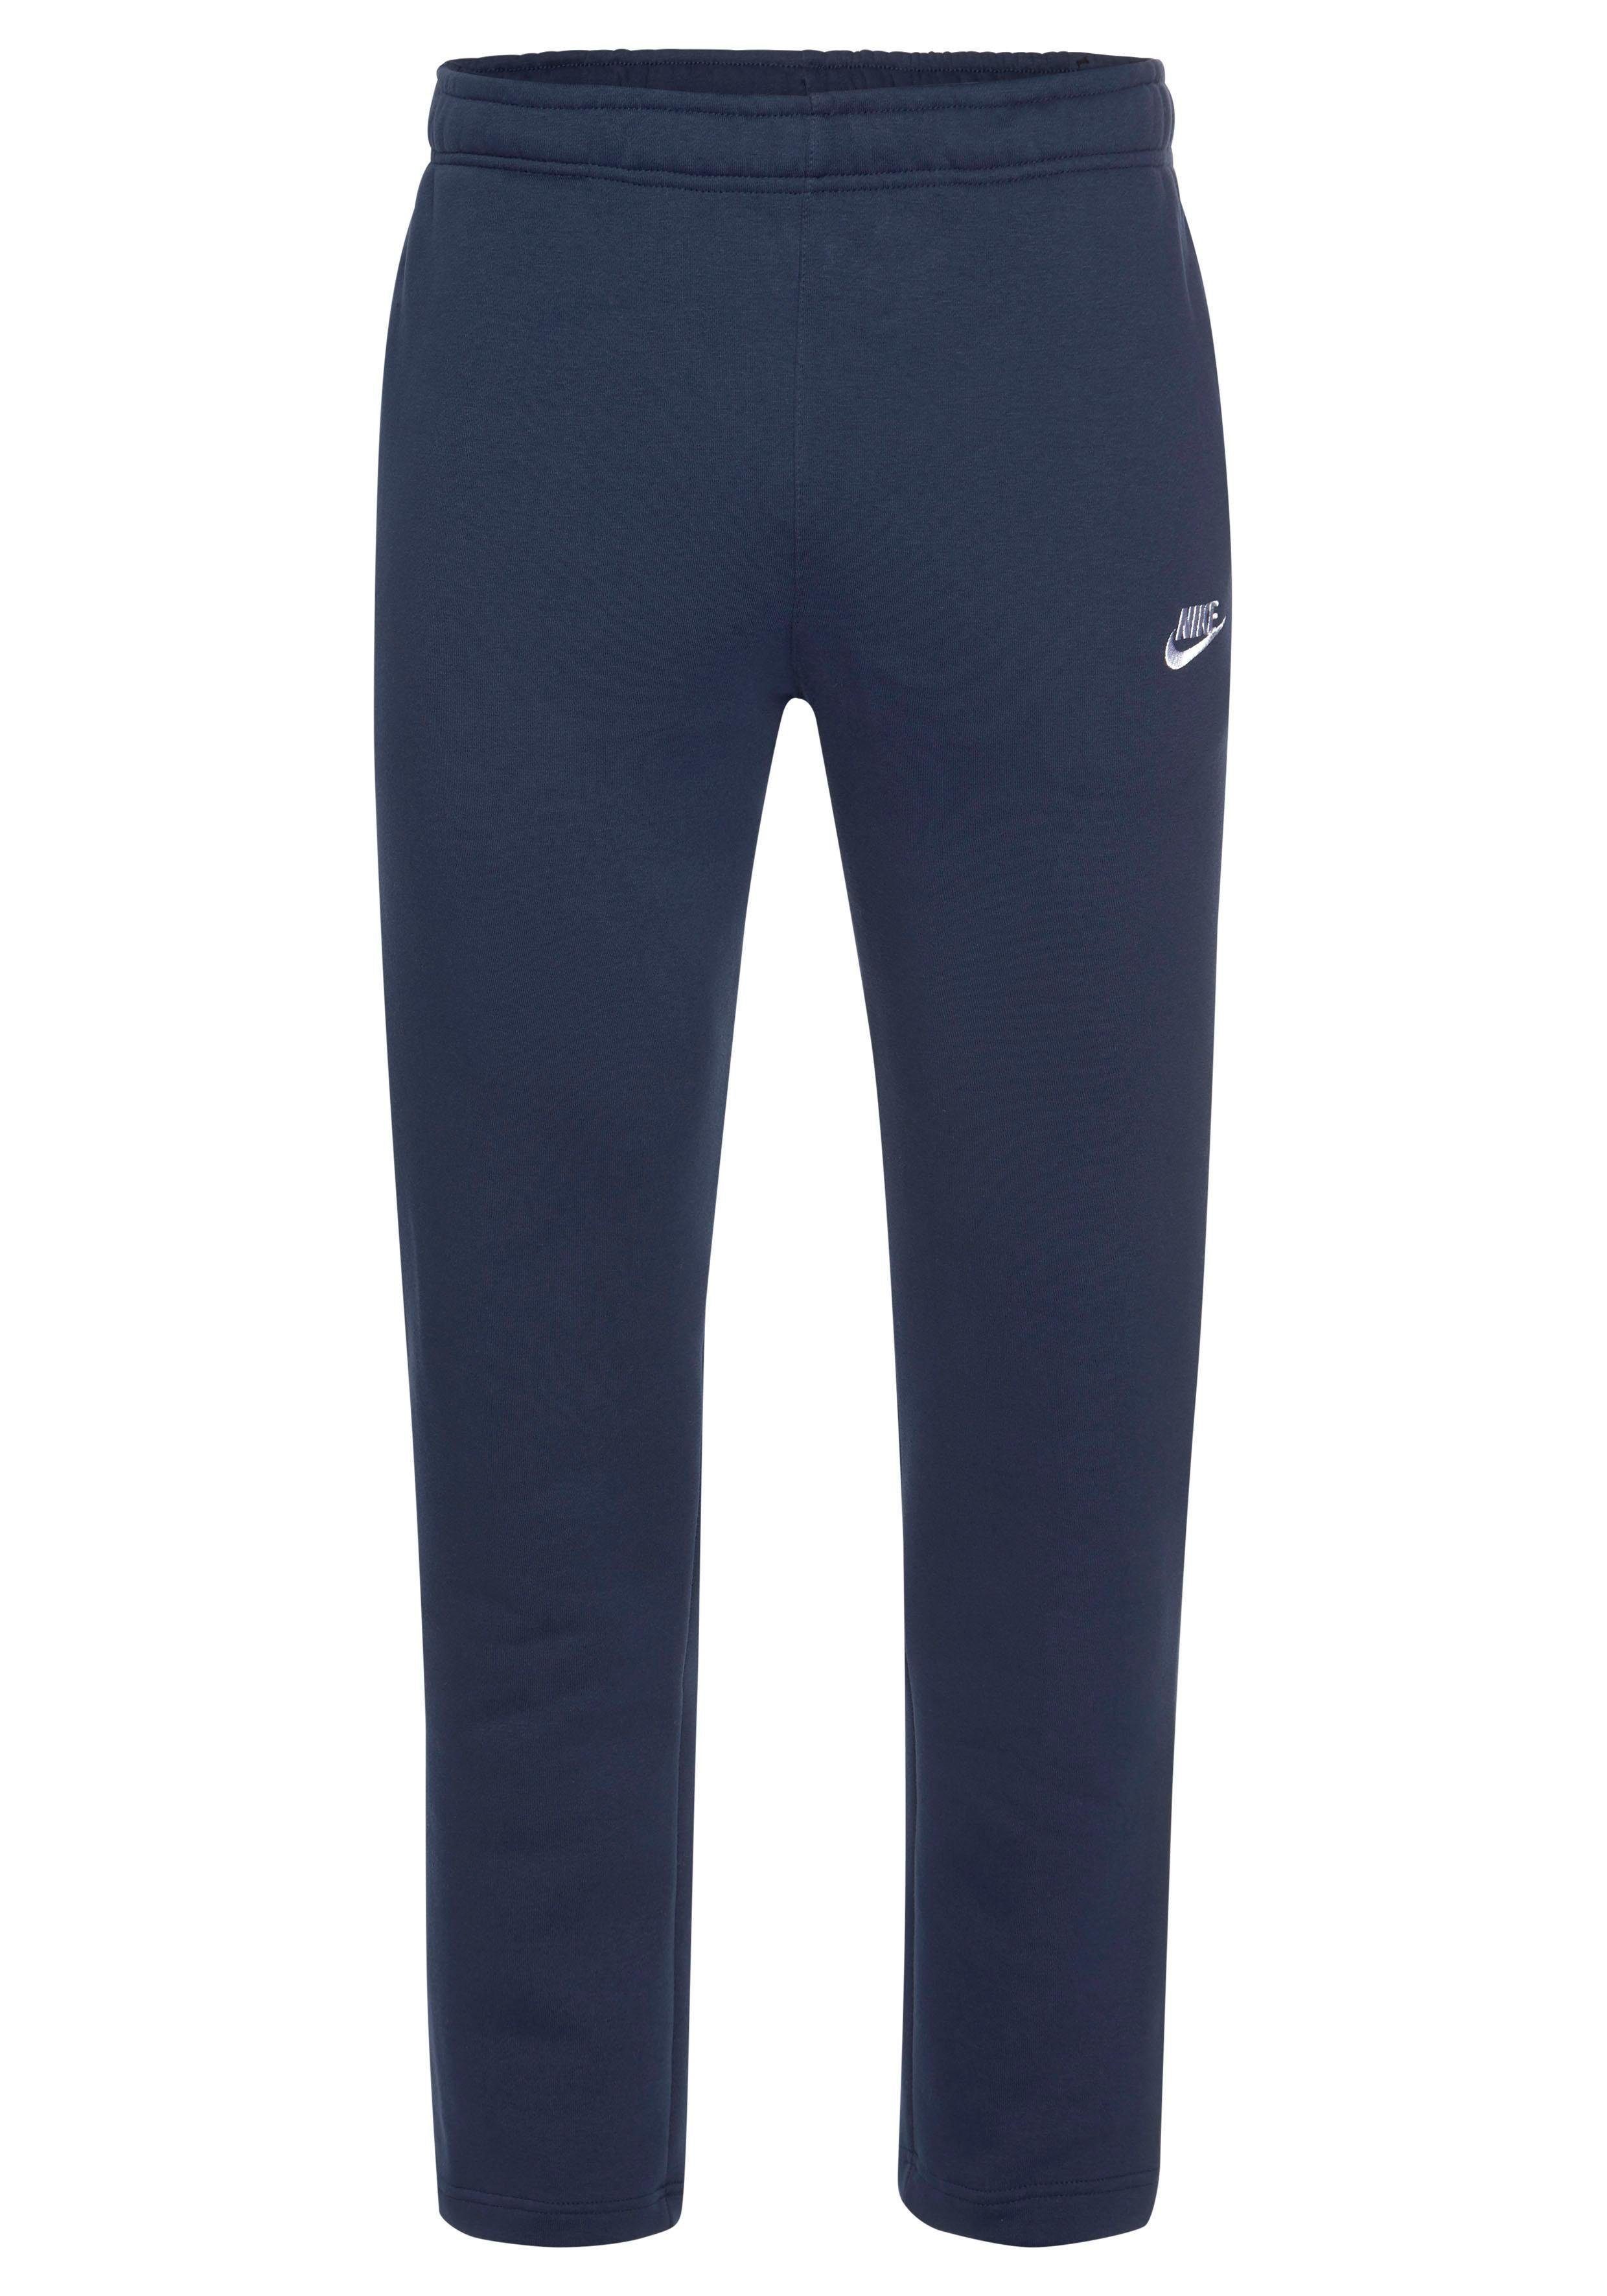 Fleece marine Nike Jogginghose Sportswear Pants Club Men's